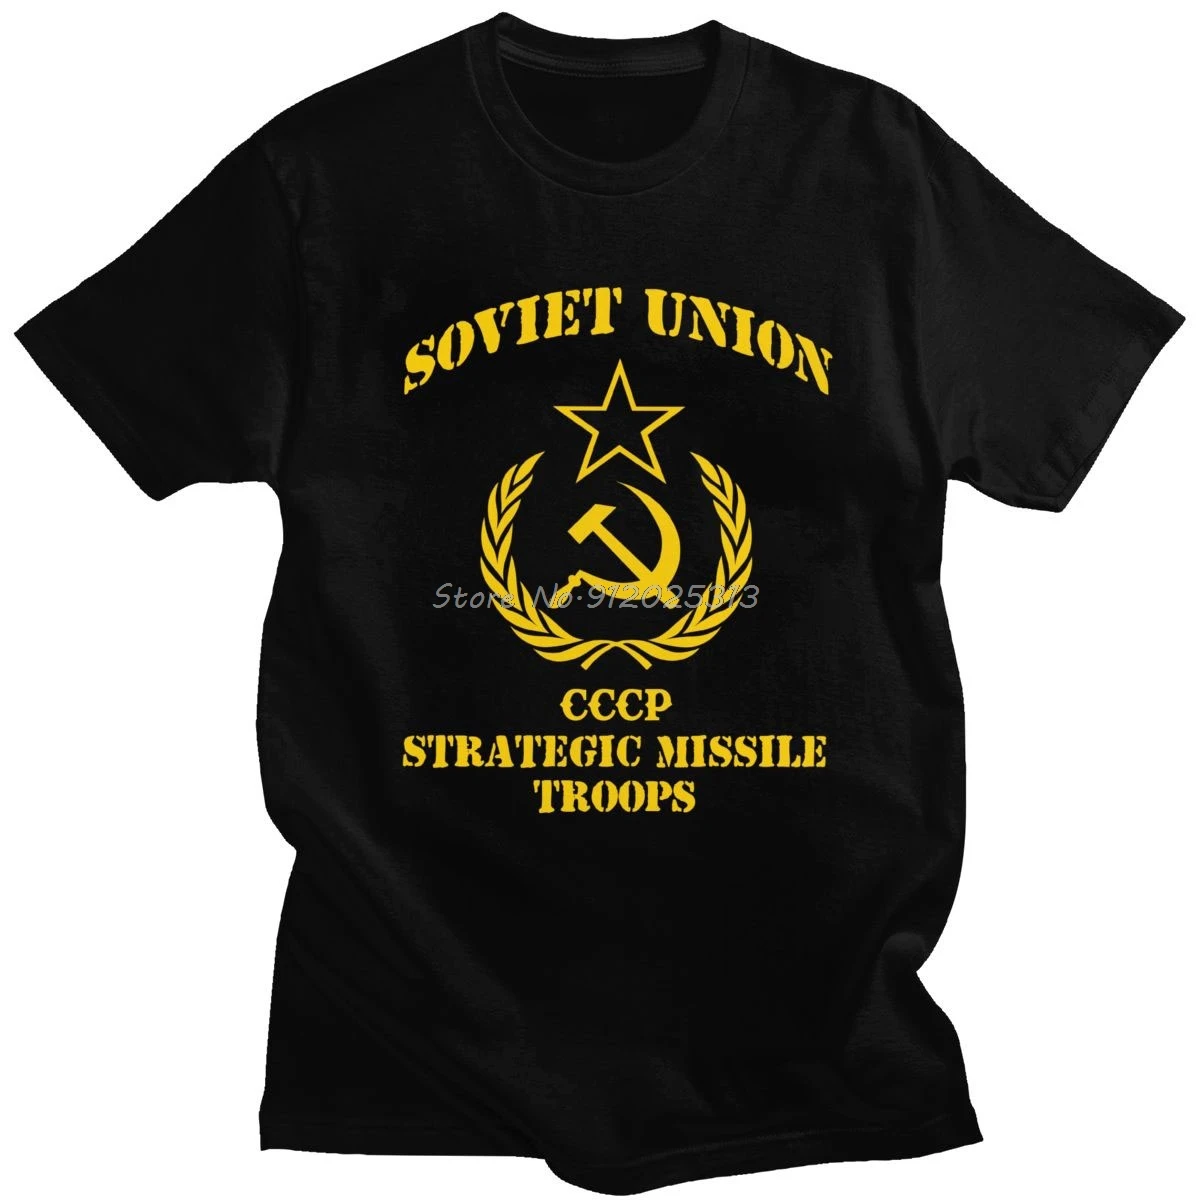 

Крутая Мужская футболка с эмблемой Советского Союза, футболка с коротким рукавом из хлопка в стиле СССР